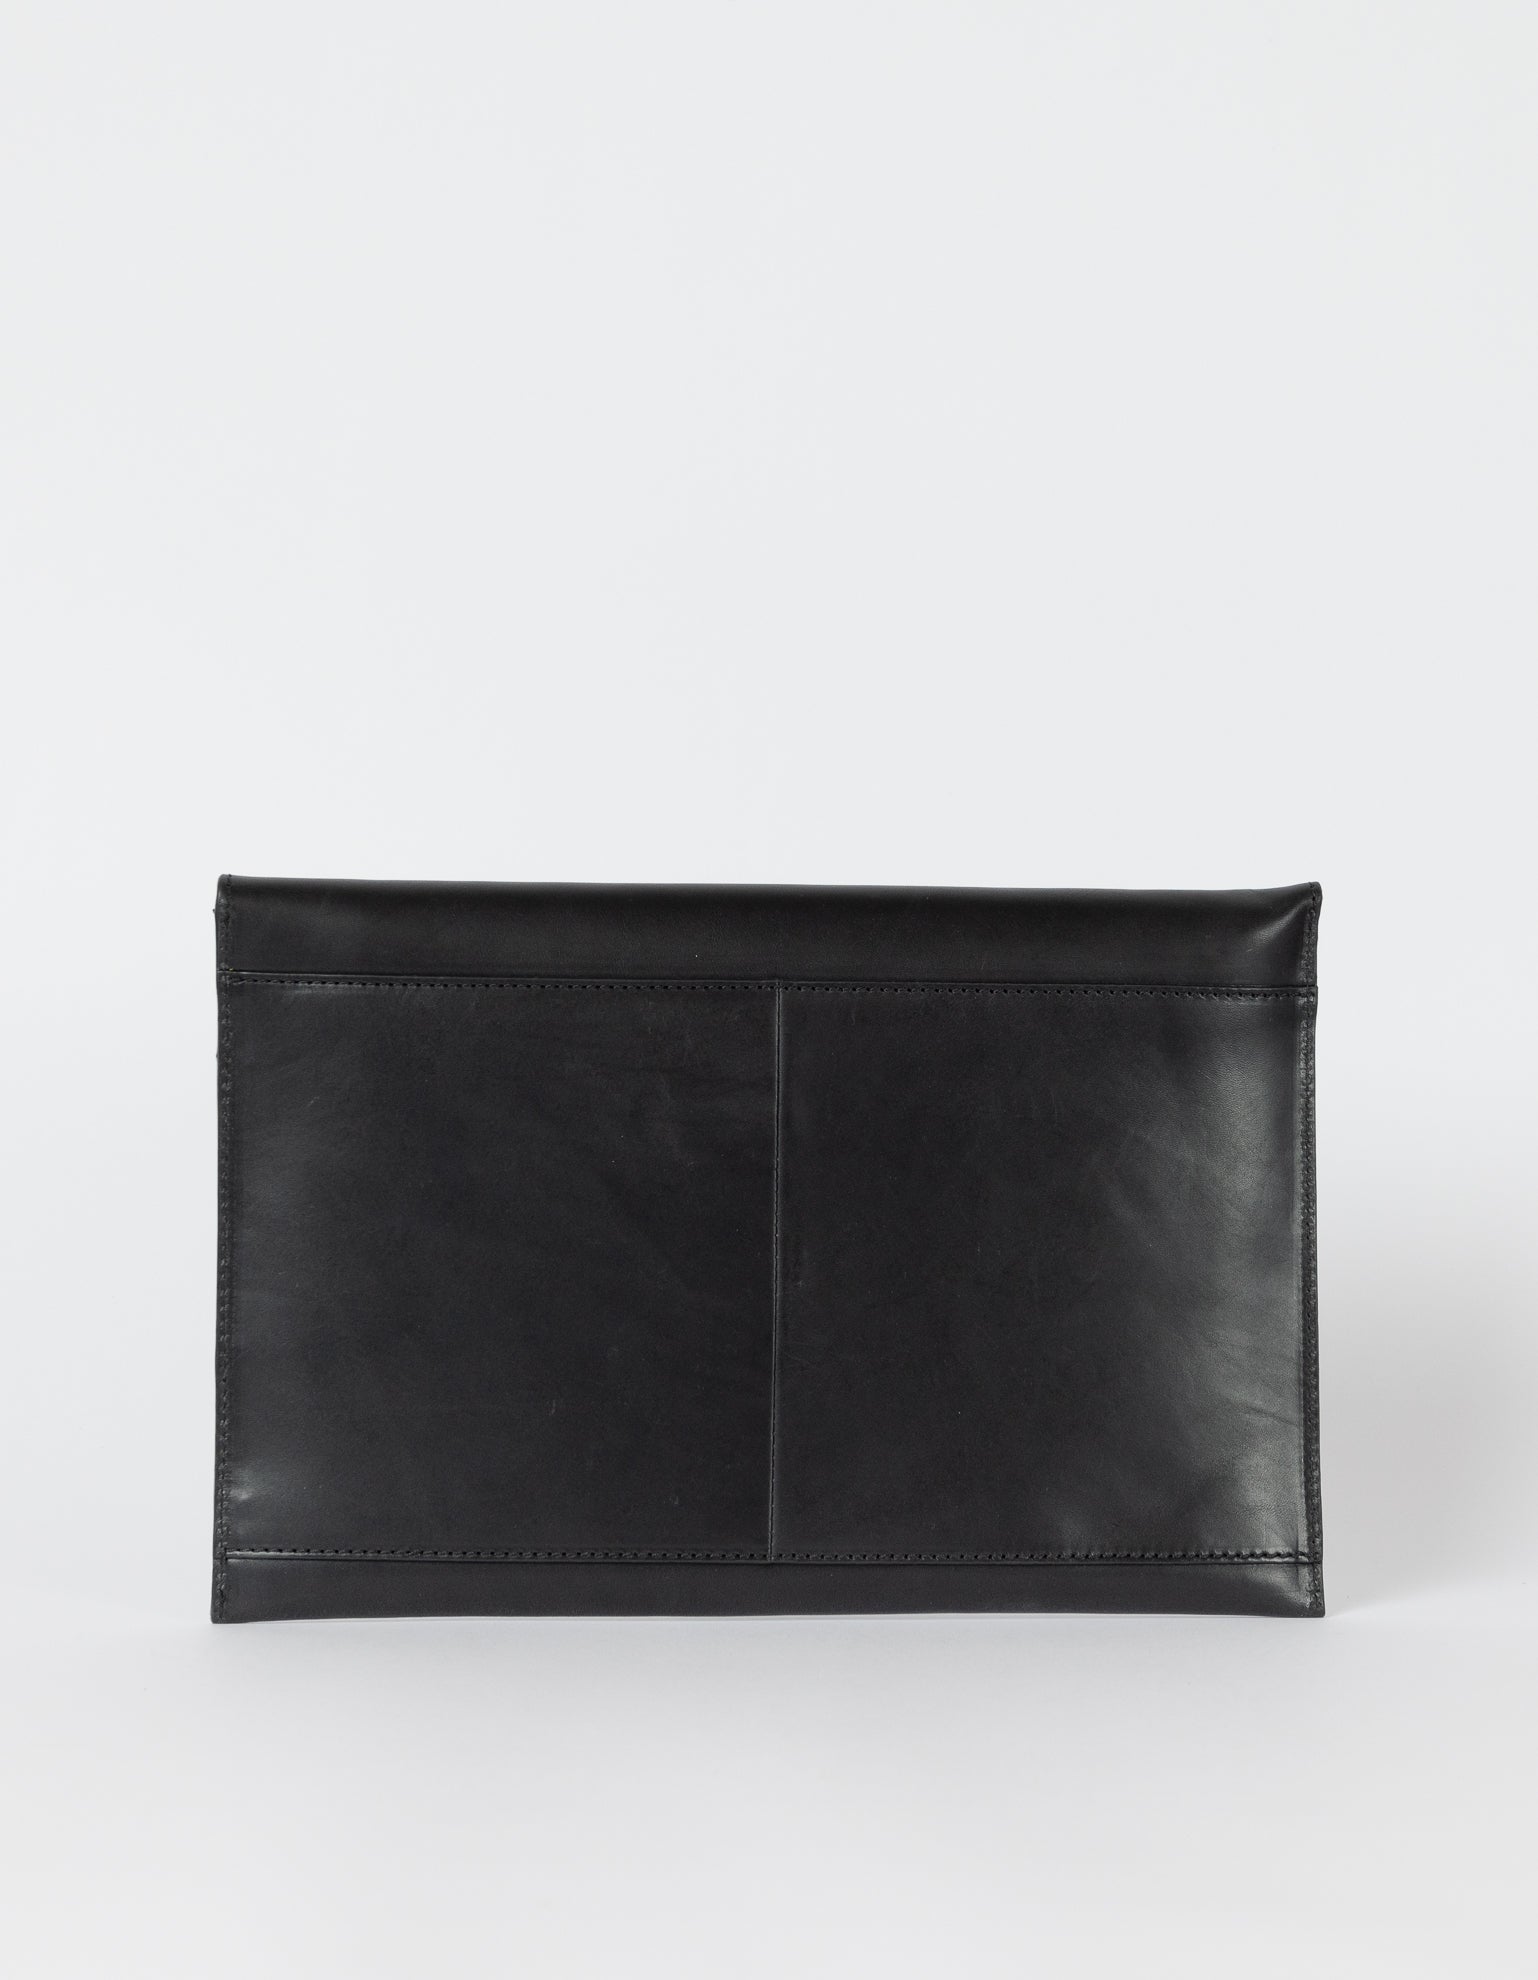 Black Leather 13'' laptop sleeve. Back product image.